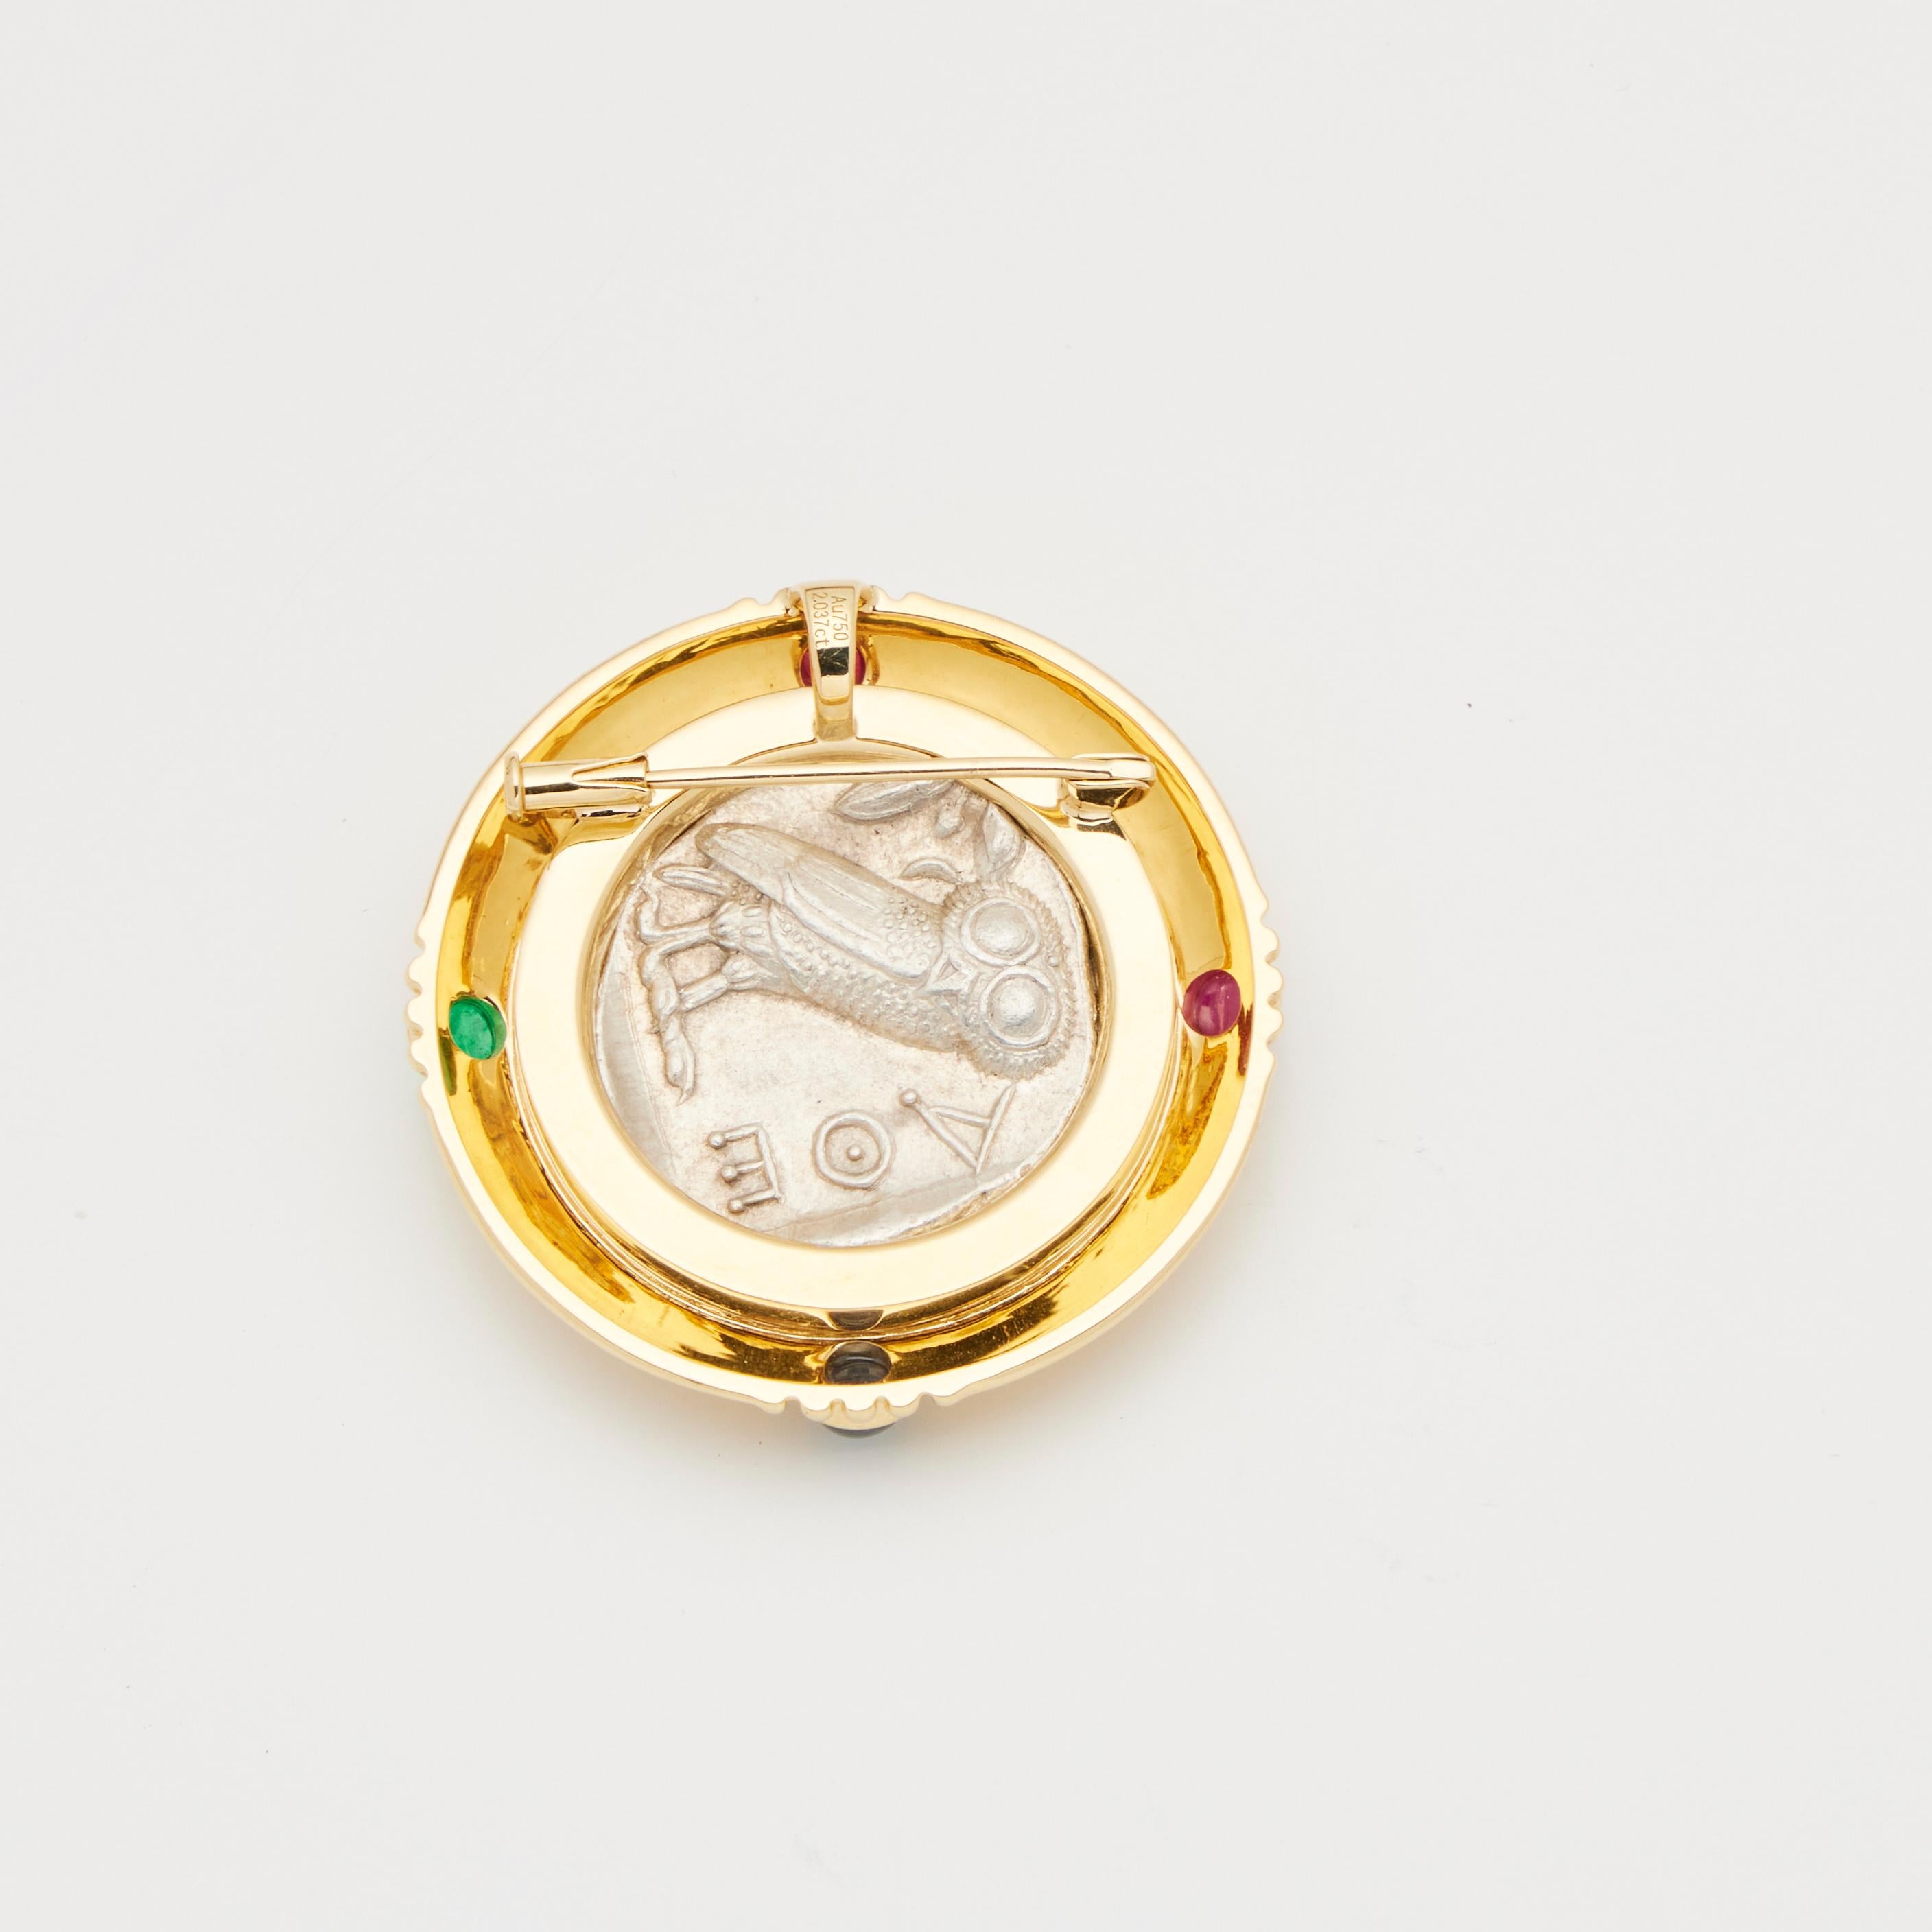 18 Karat Gelbgold
Antike, authentische griechische Silbermünze mit zentralem Einsatz
Verziert mit mehreren Edelsteinen 1.947 ct
Kann als Anhänger verwendet werden
Das Gesamtgewicht beträgt etwa 34,33 g.
1,5 *1,5 Zoll